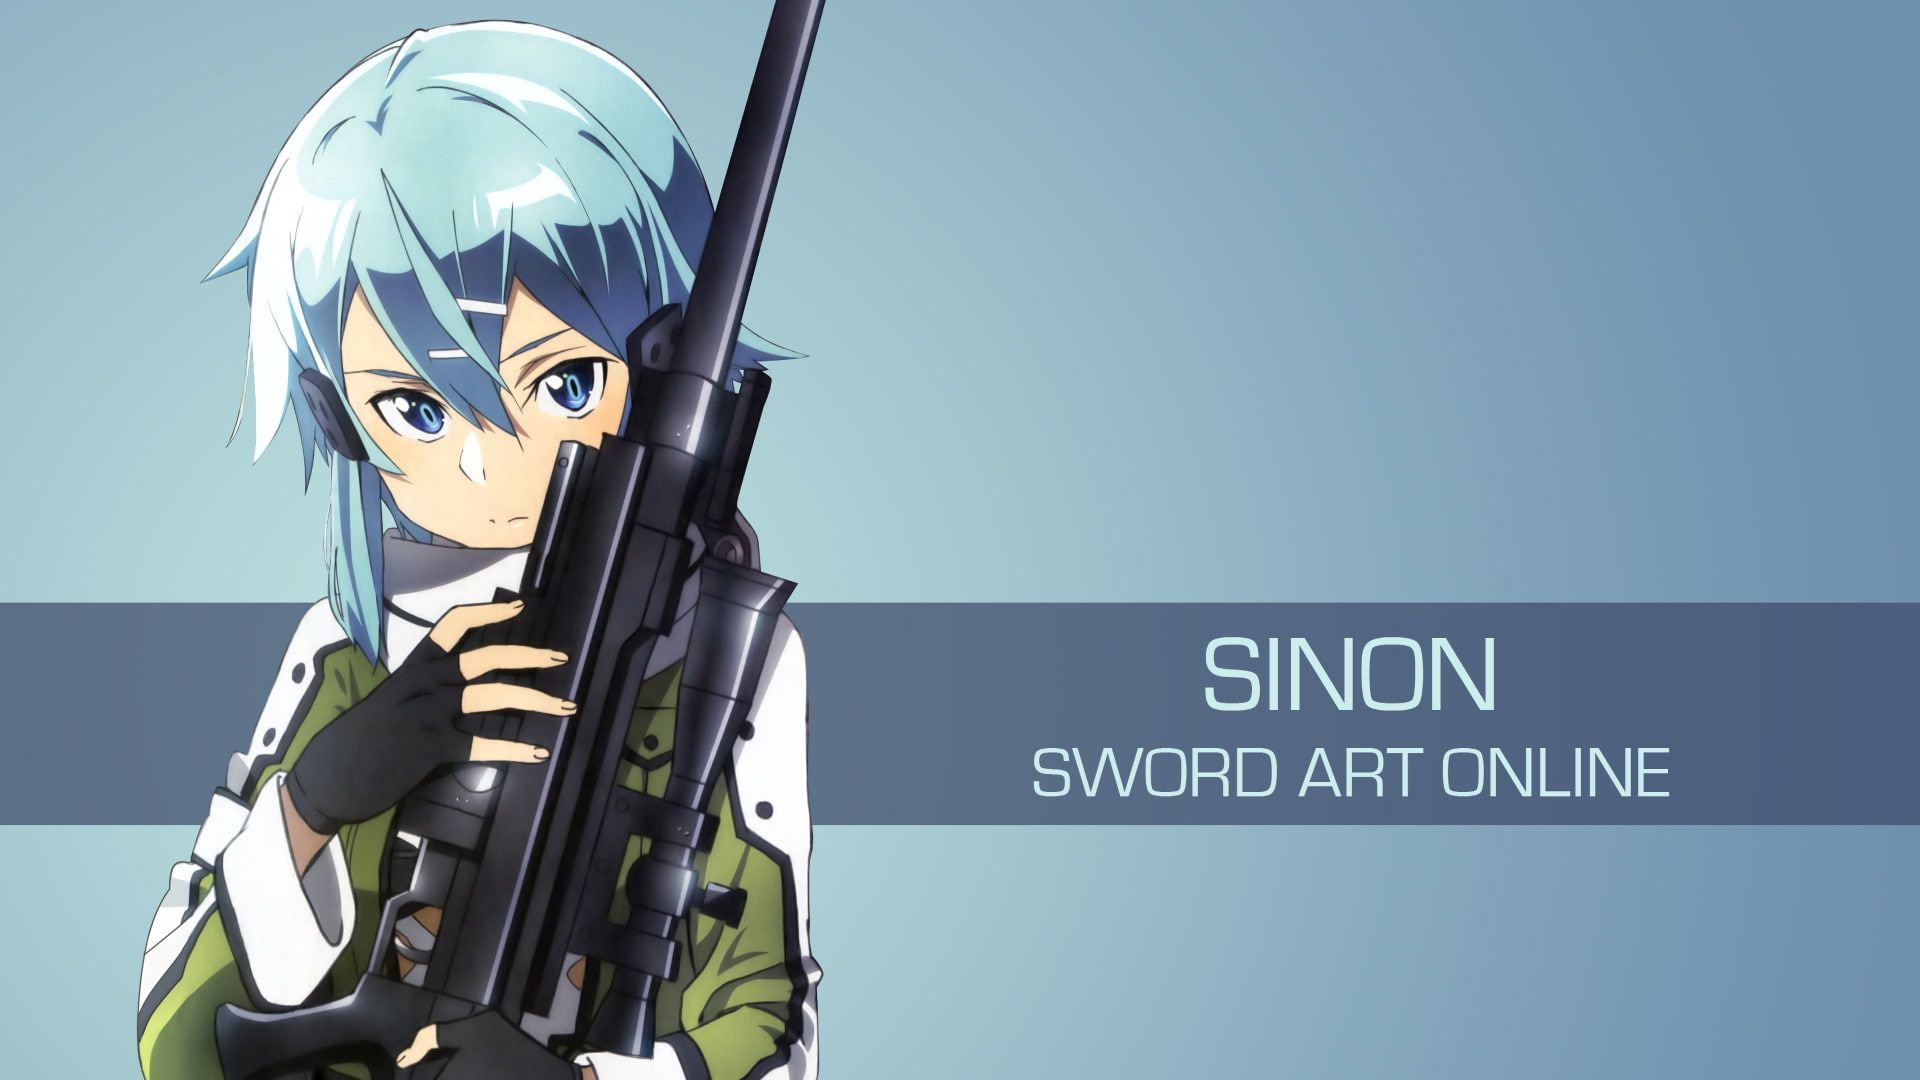 1920x1080 Sword Art Online Sword Art Online II Sinon (Sword Art Online) #1080P # wallpaper #hdwallpaper #desktop | Sword art, Sword art online wallpaper, Sword art online